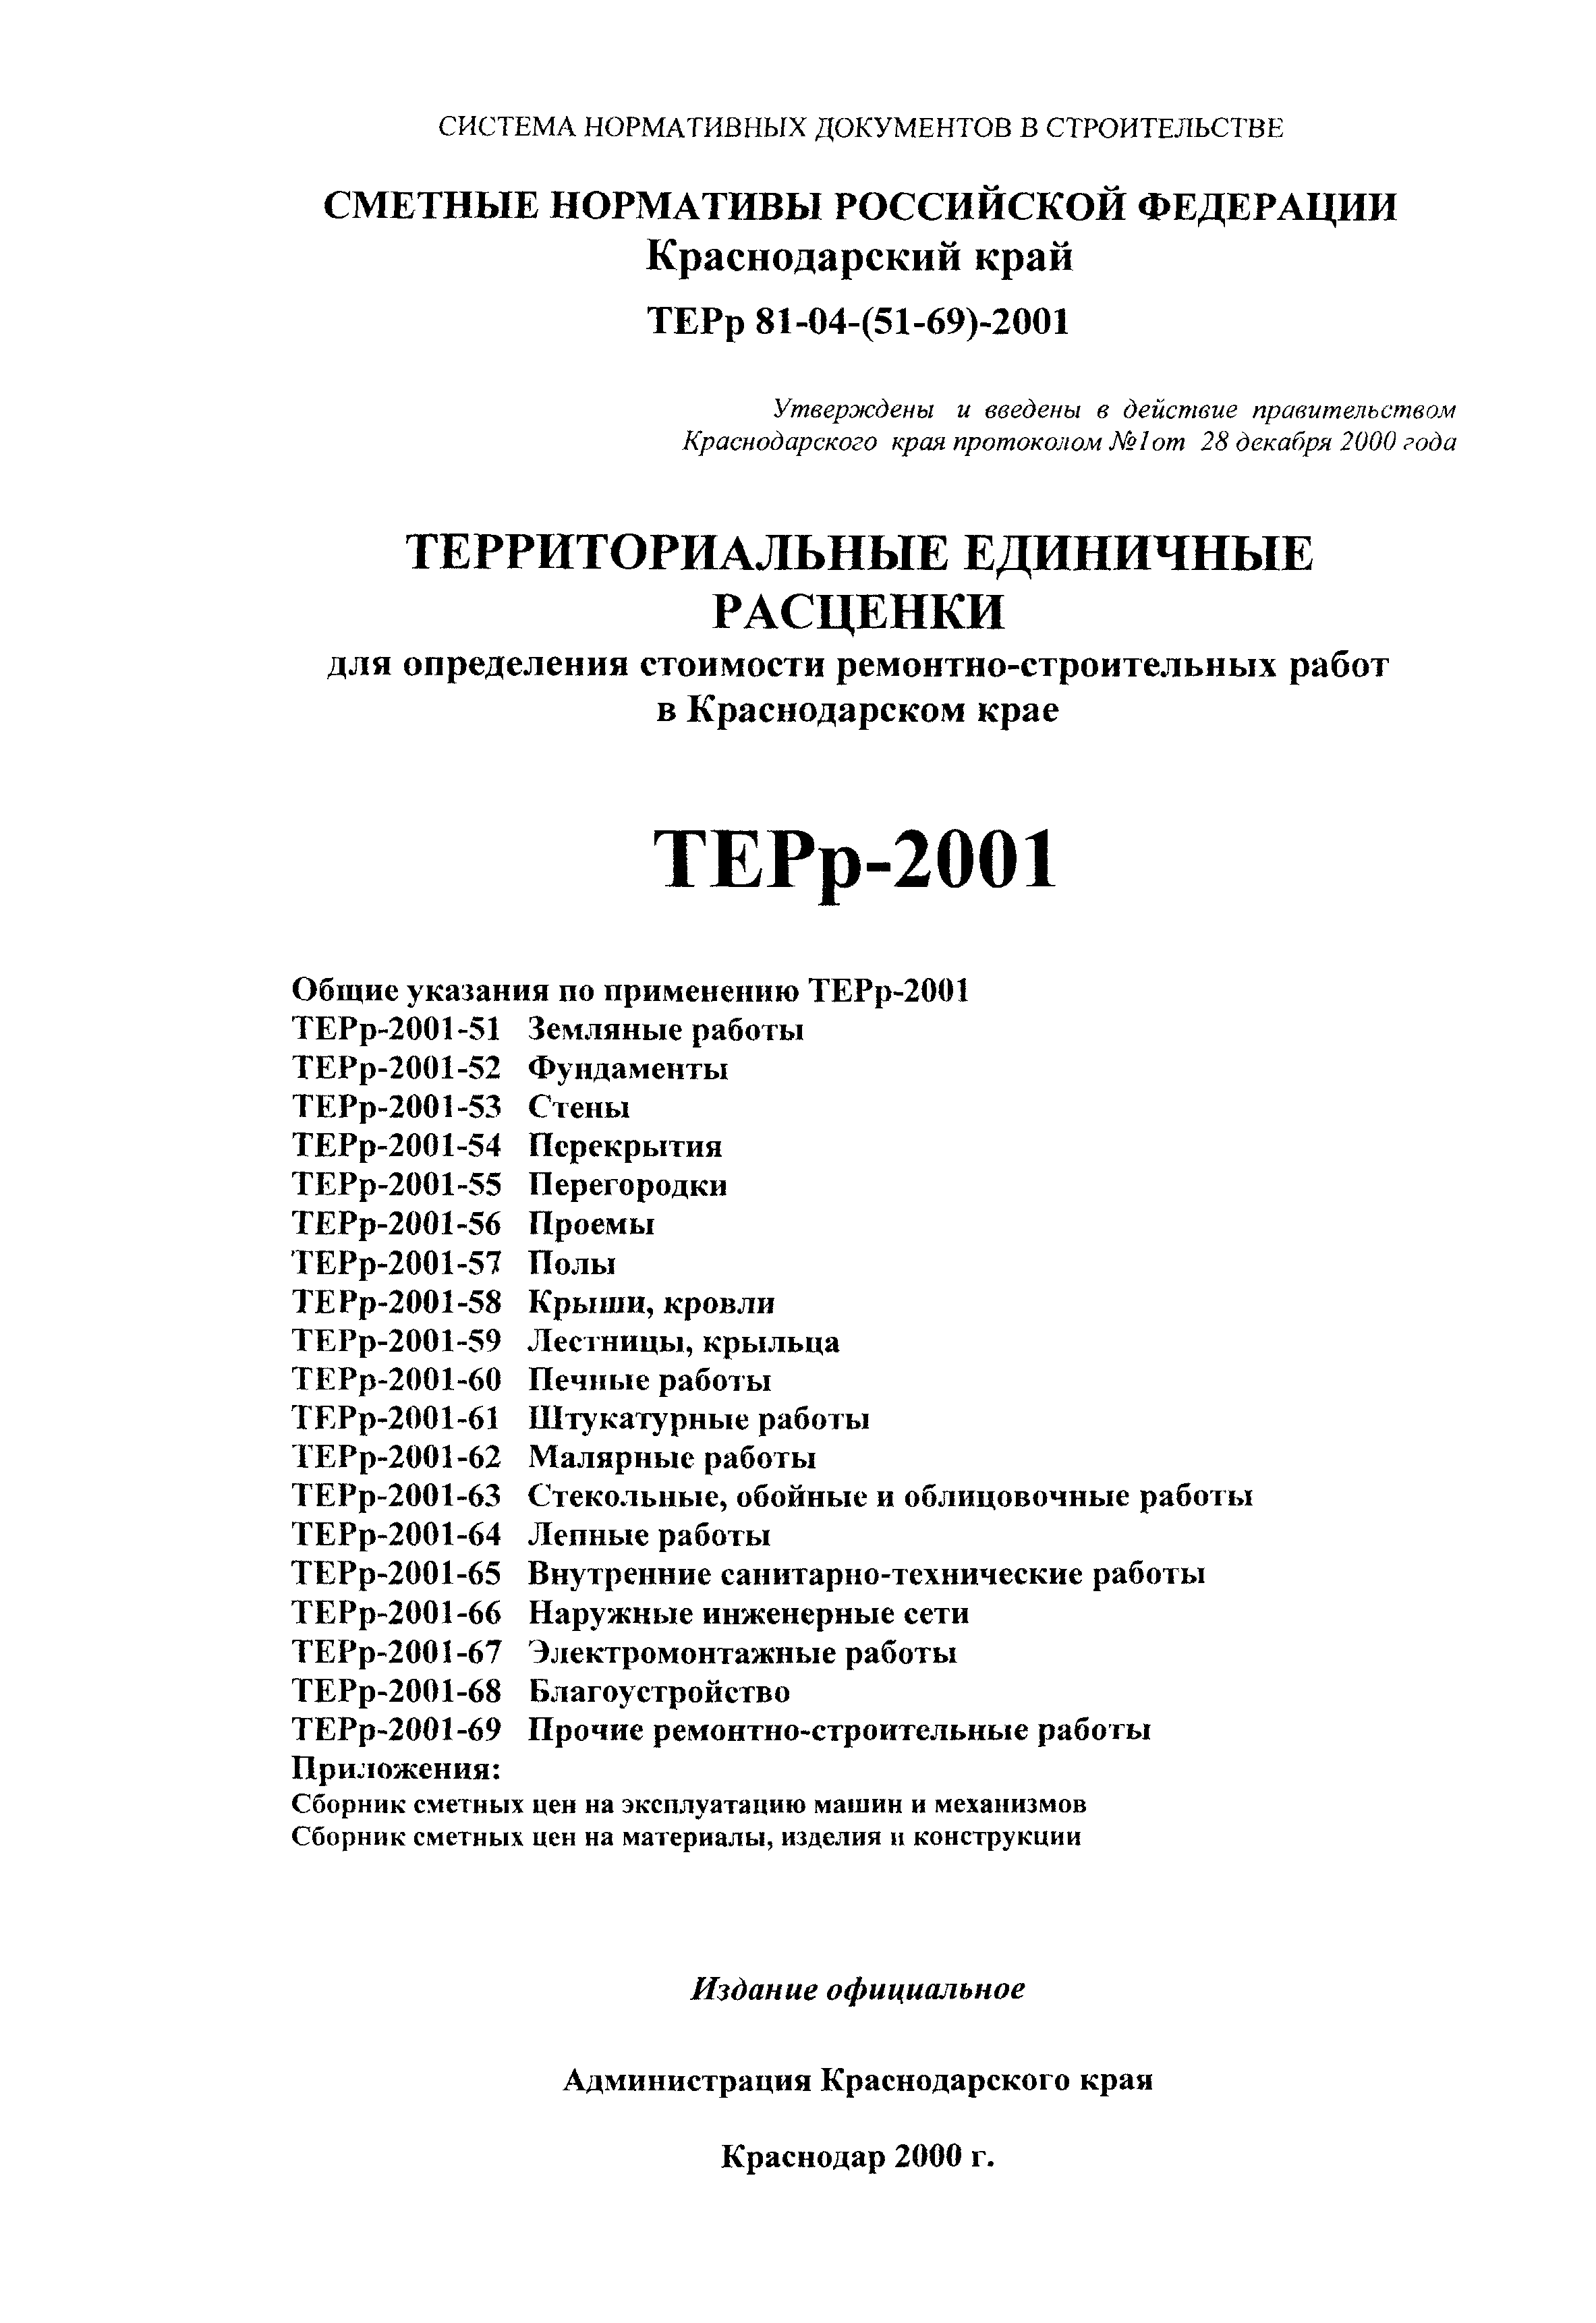 ТЕРр Краснодарского края 2001-56